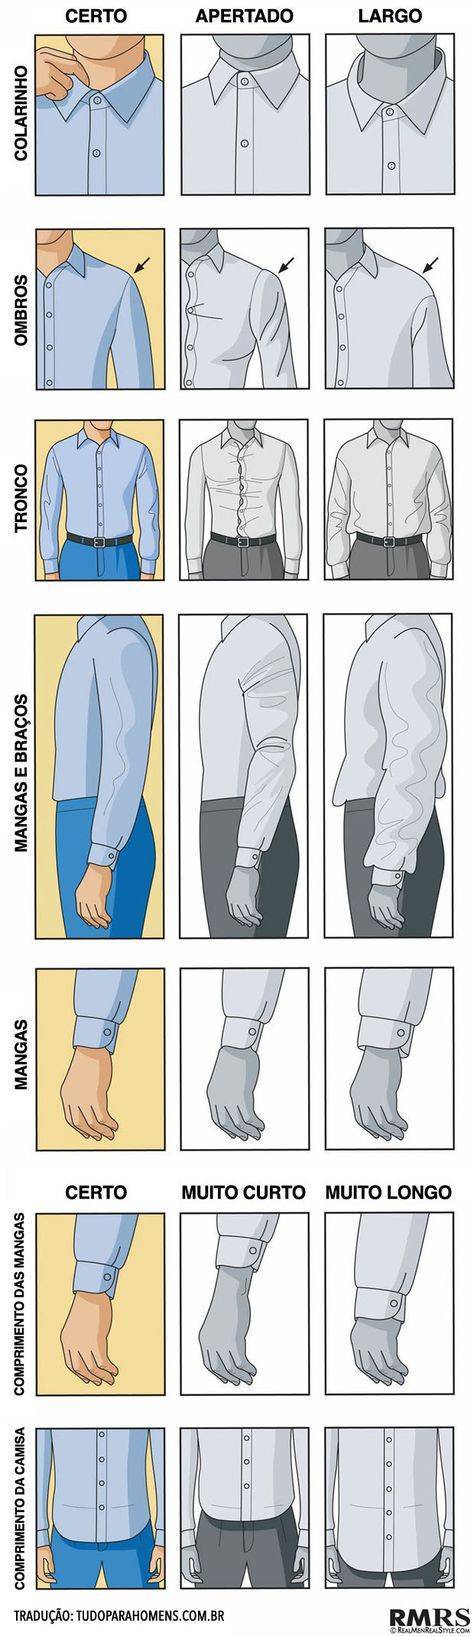 Как правильно выбрать мужскую рубашку по фасону и типу фигуры